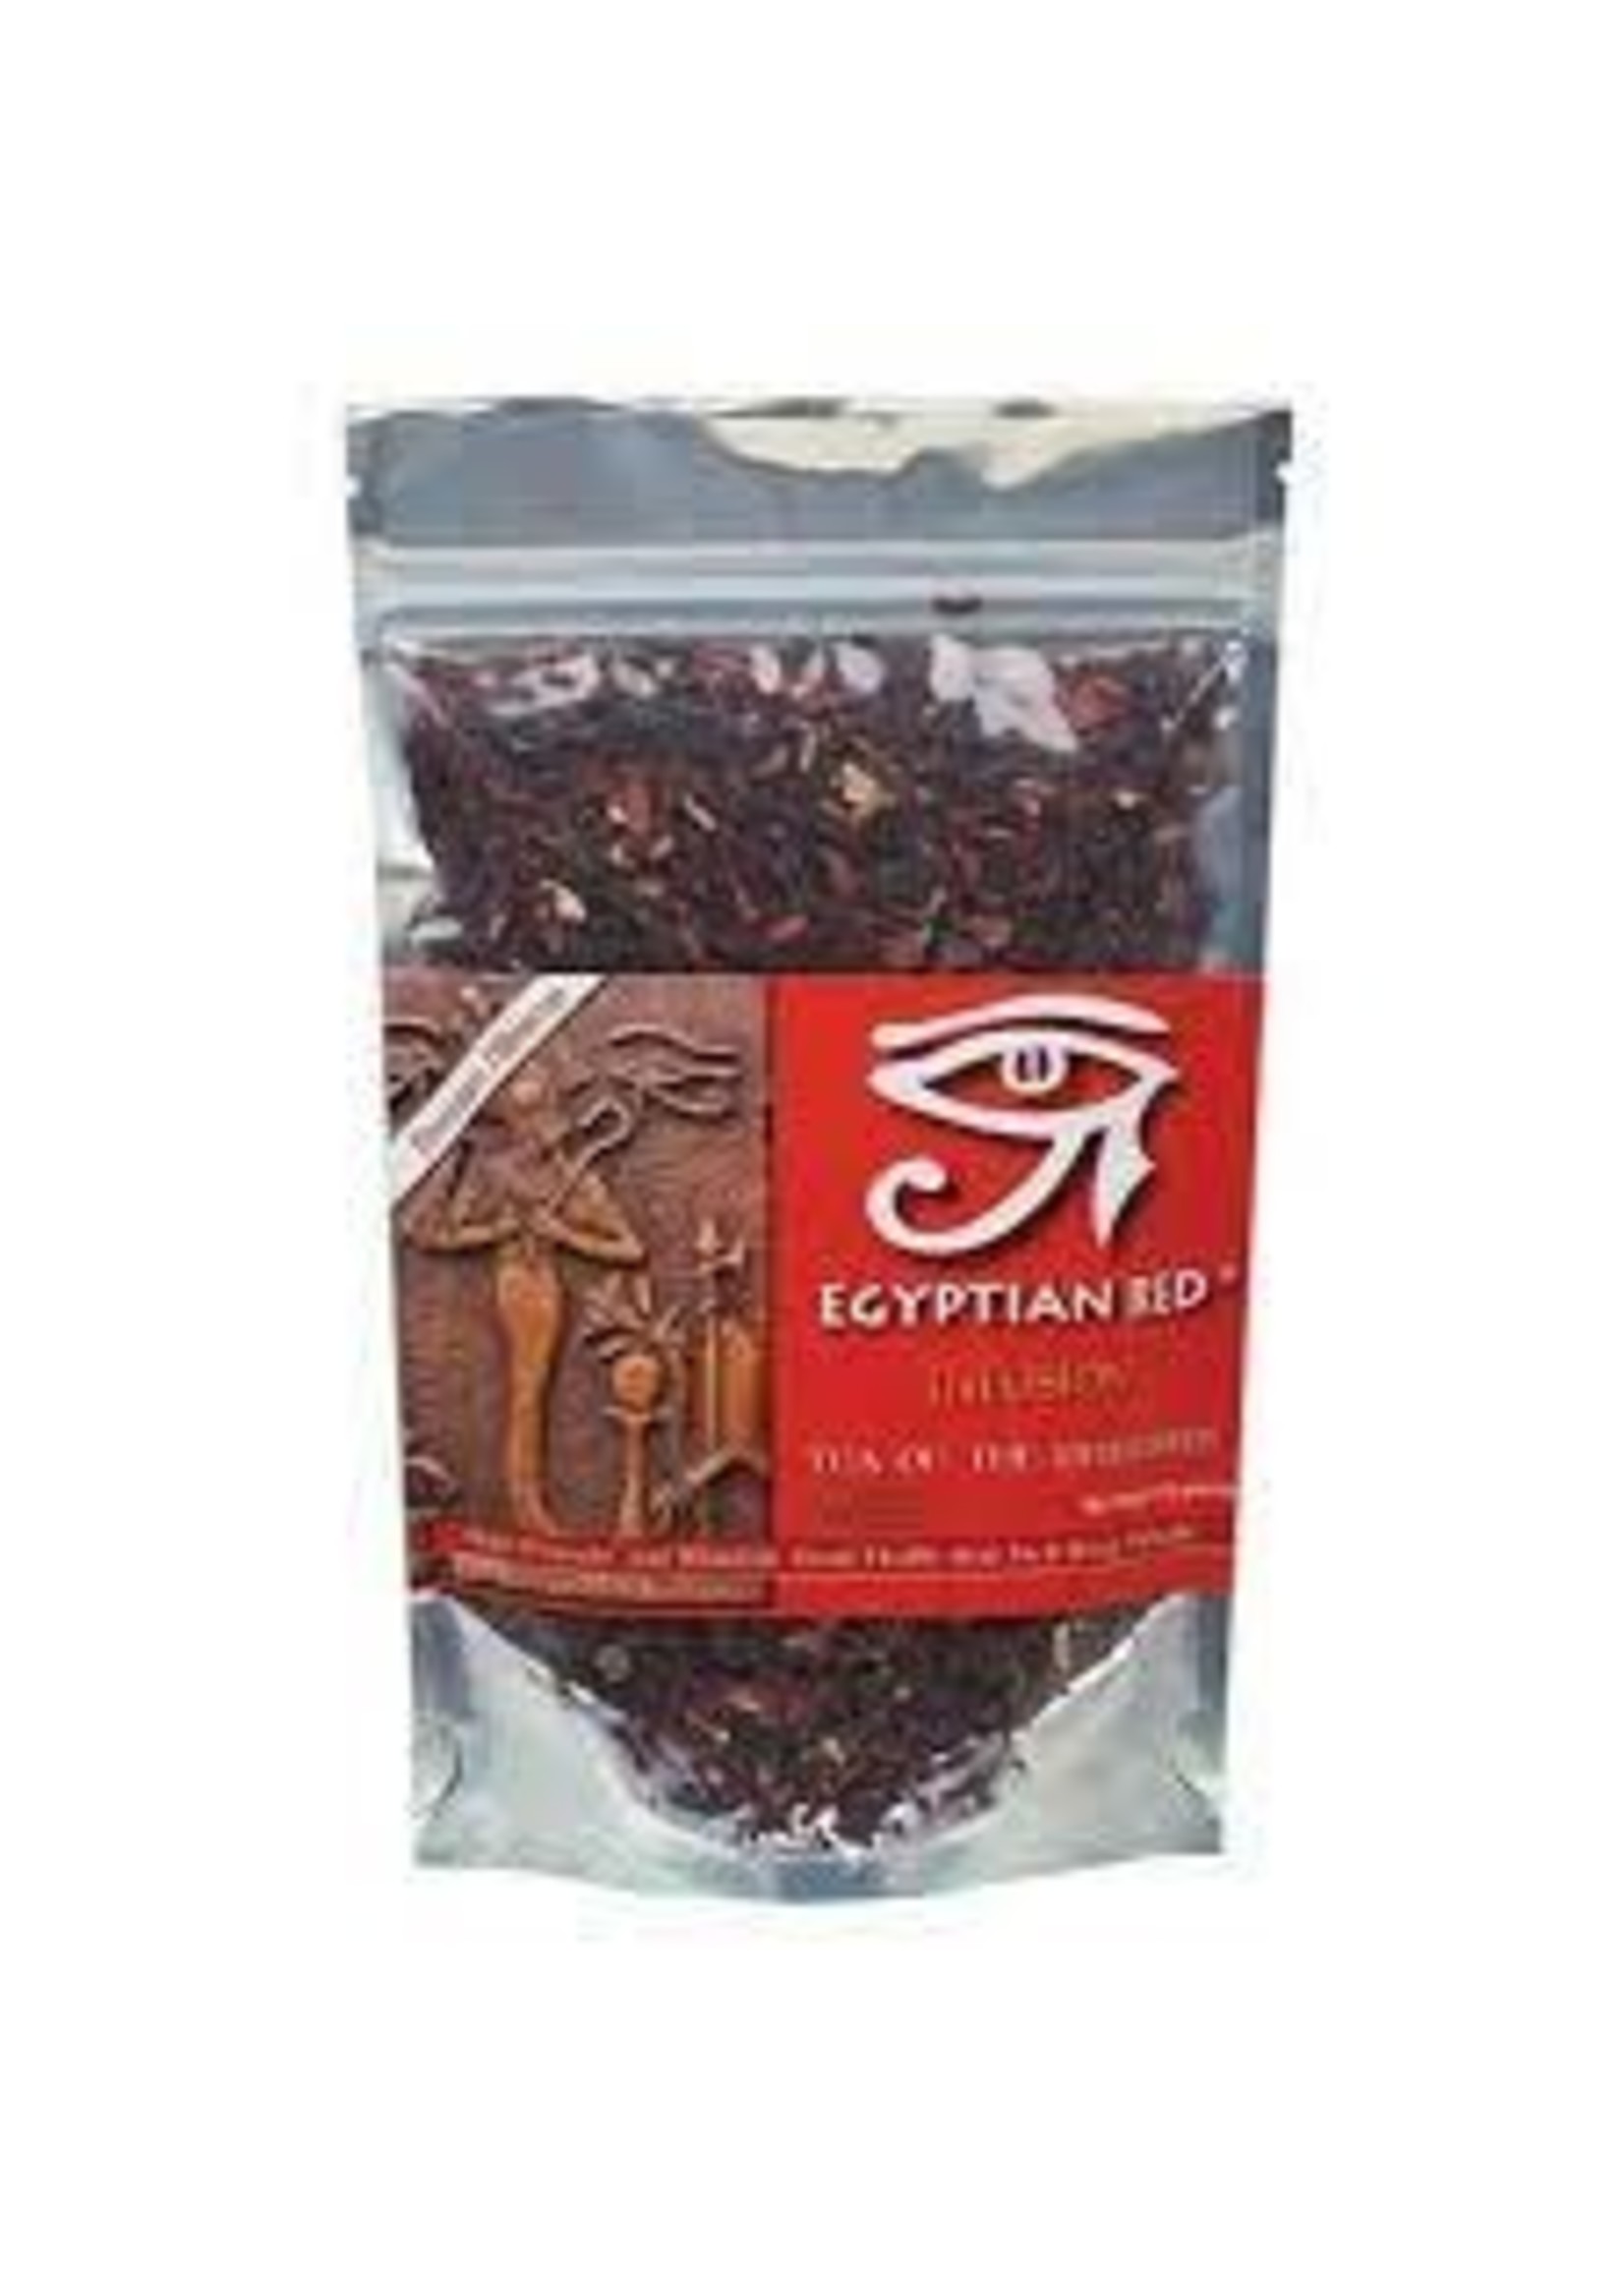 EGYPTIAN RED egyptian red Herbal Tea Bags tea of the pharoahs 100g